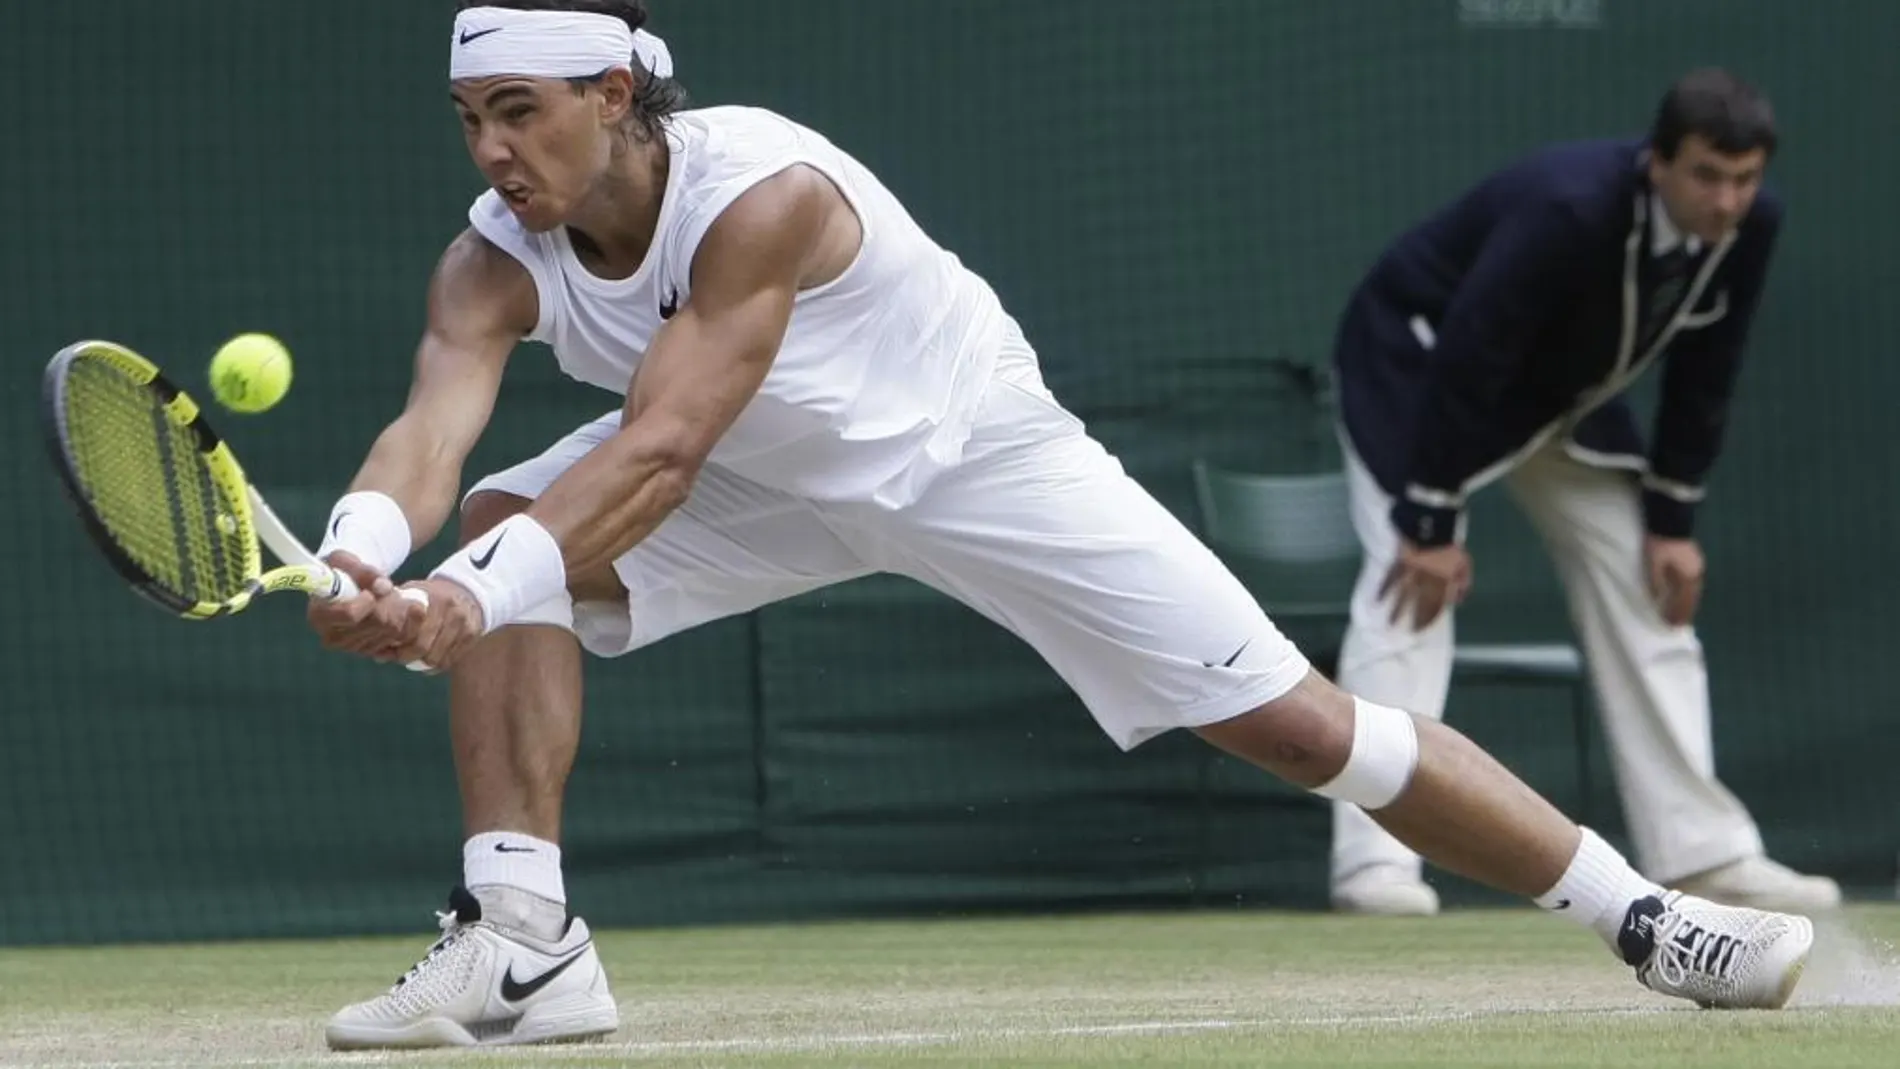 A sus 28 años, el objetivo prioritario para Nadal es conquistar Wimbledon por tercera vez.